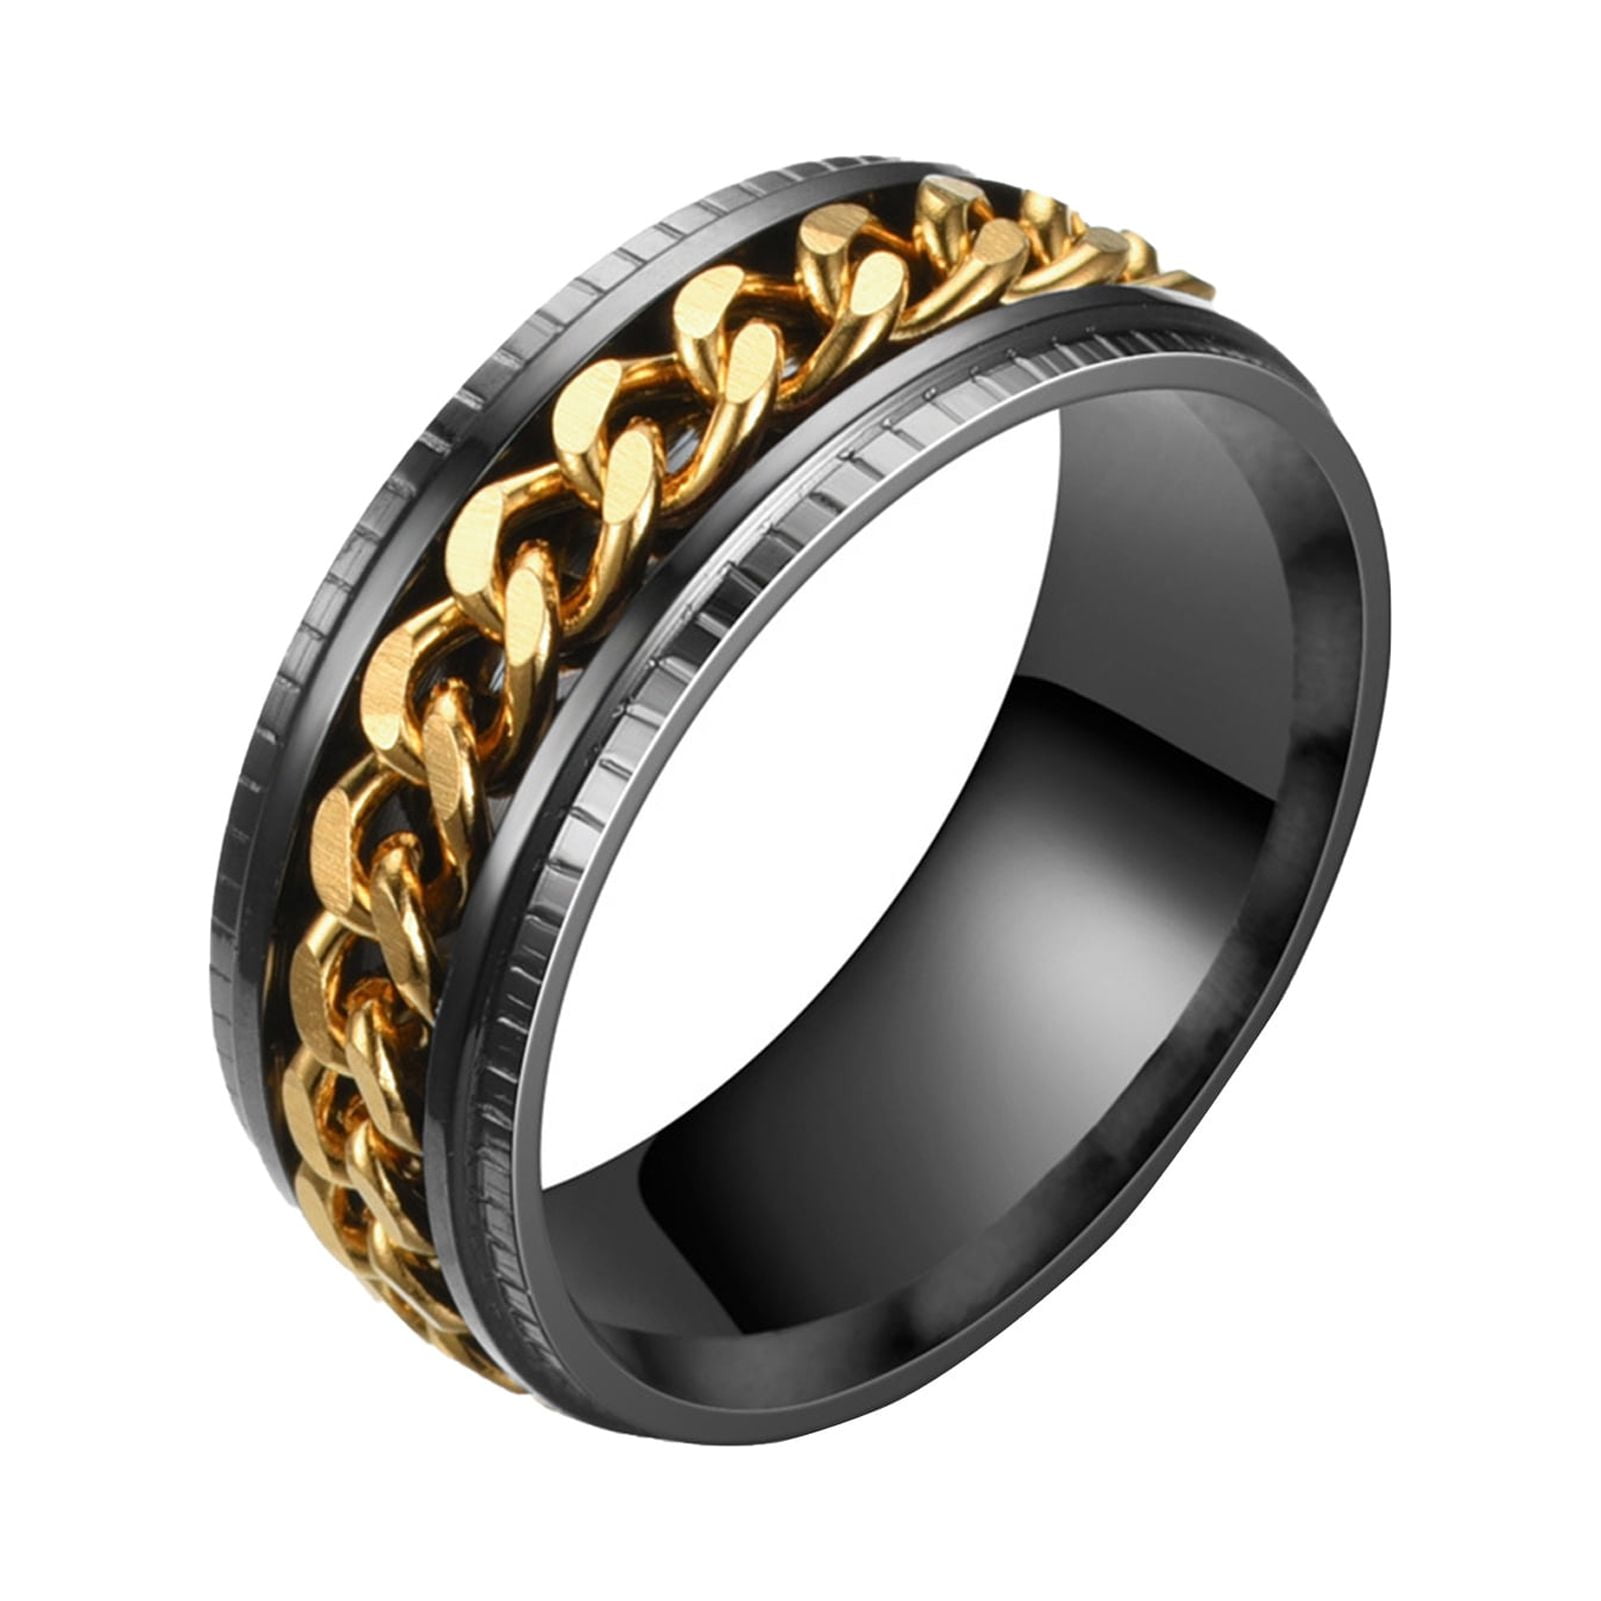 navratna, silver navratna ring, navratna jewellery, navratna stones price,  navratna stones benefits, navratna ring design, navratna ring men – CLARA